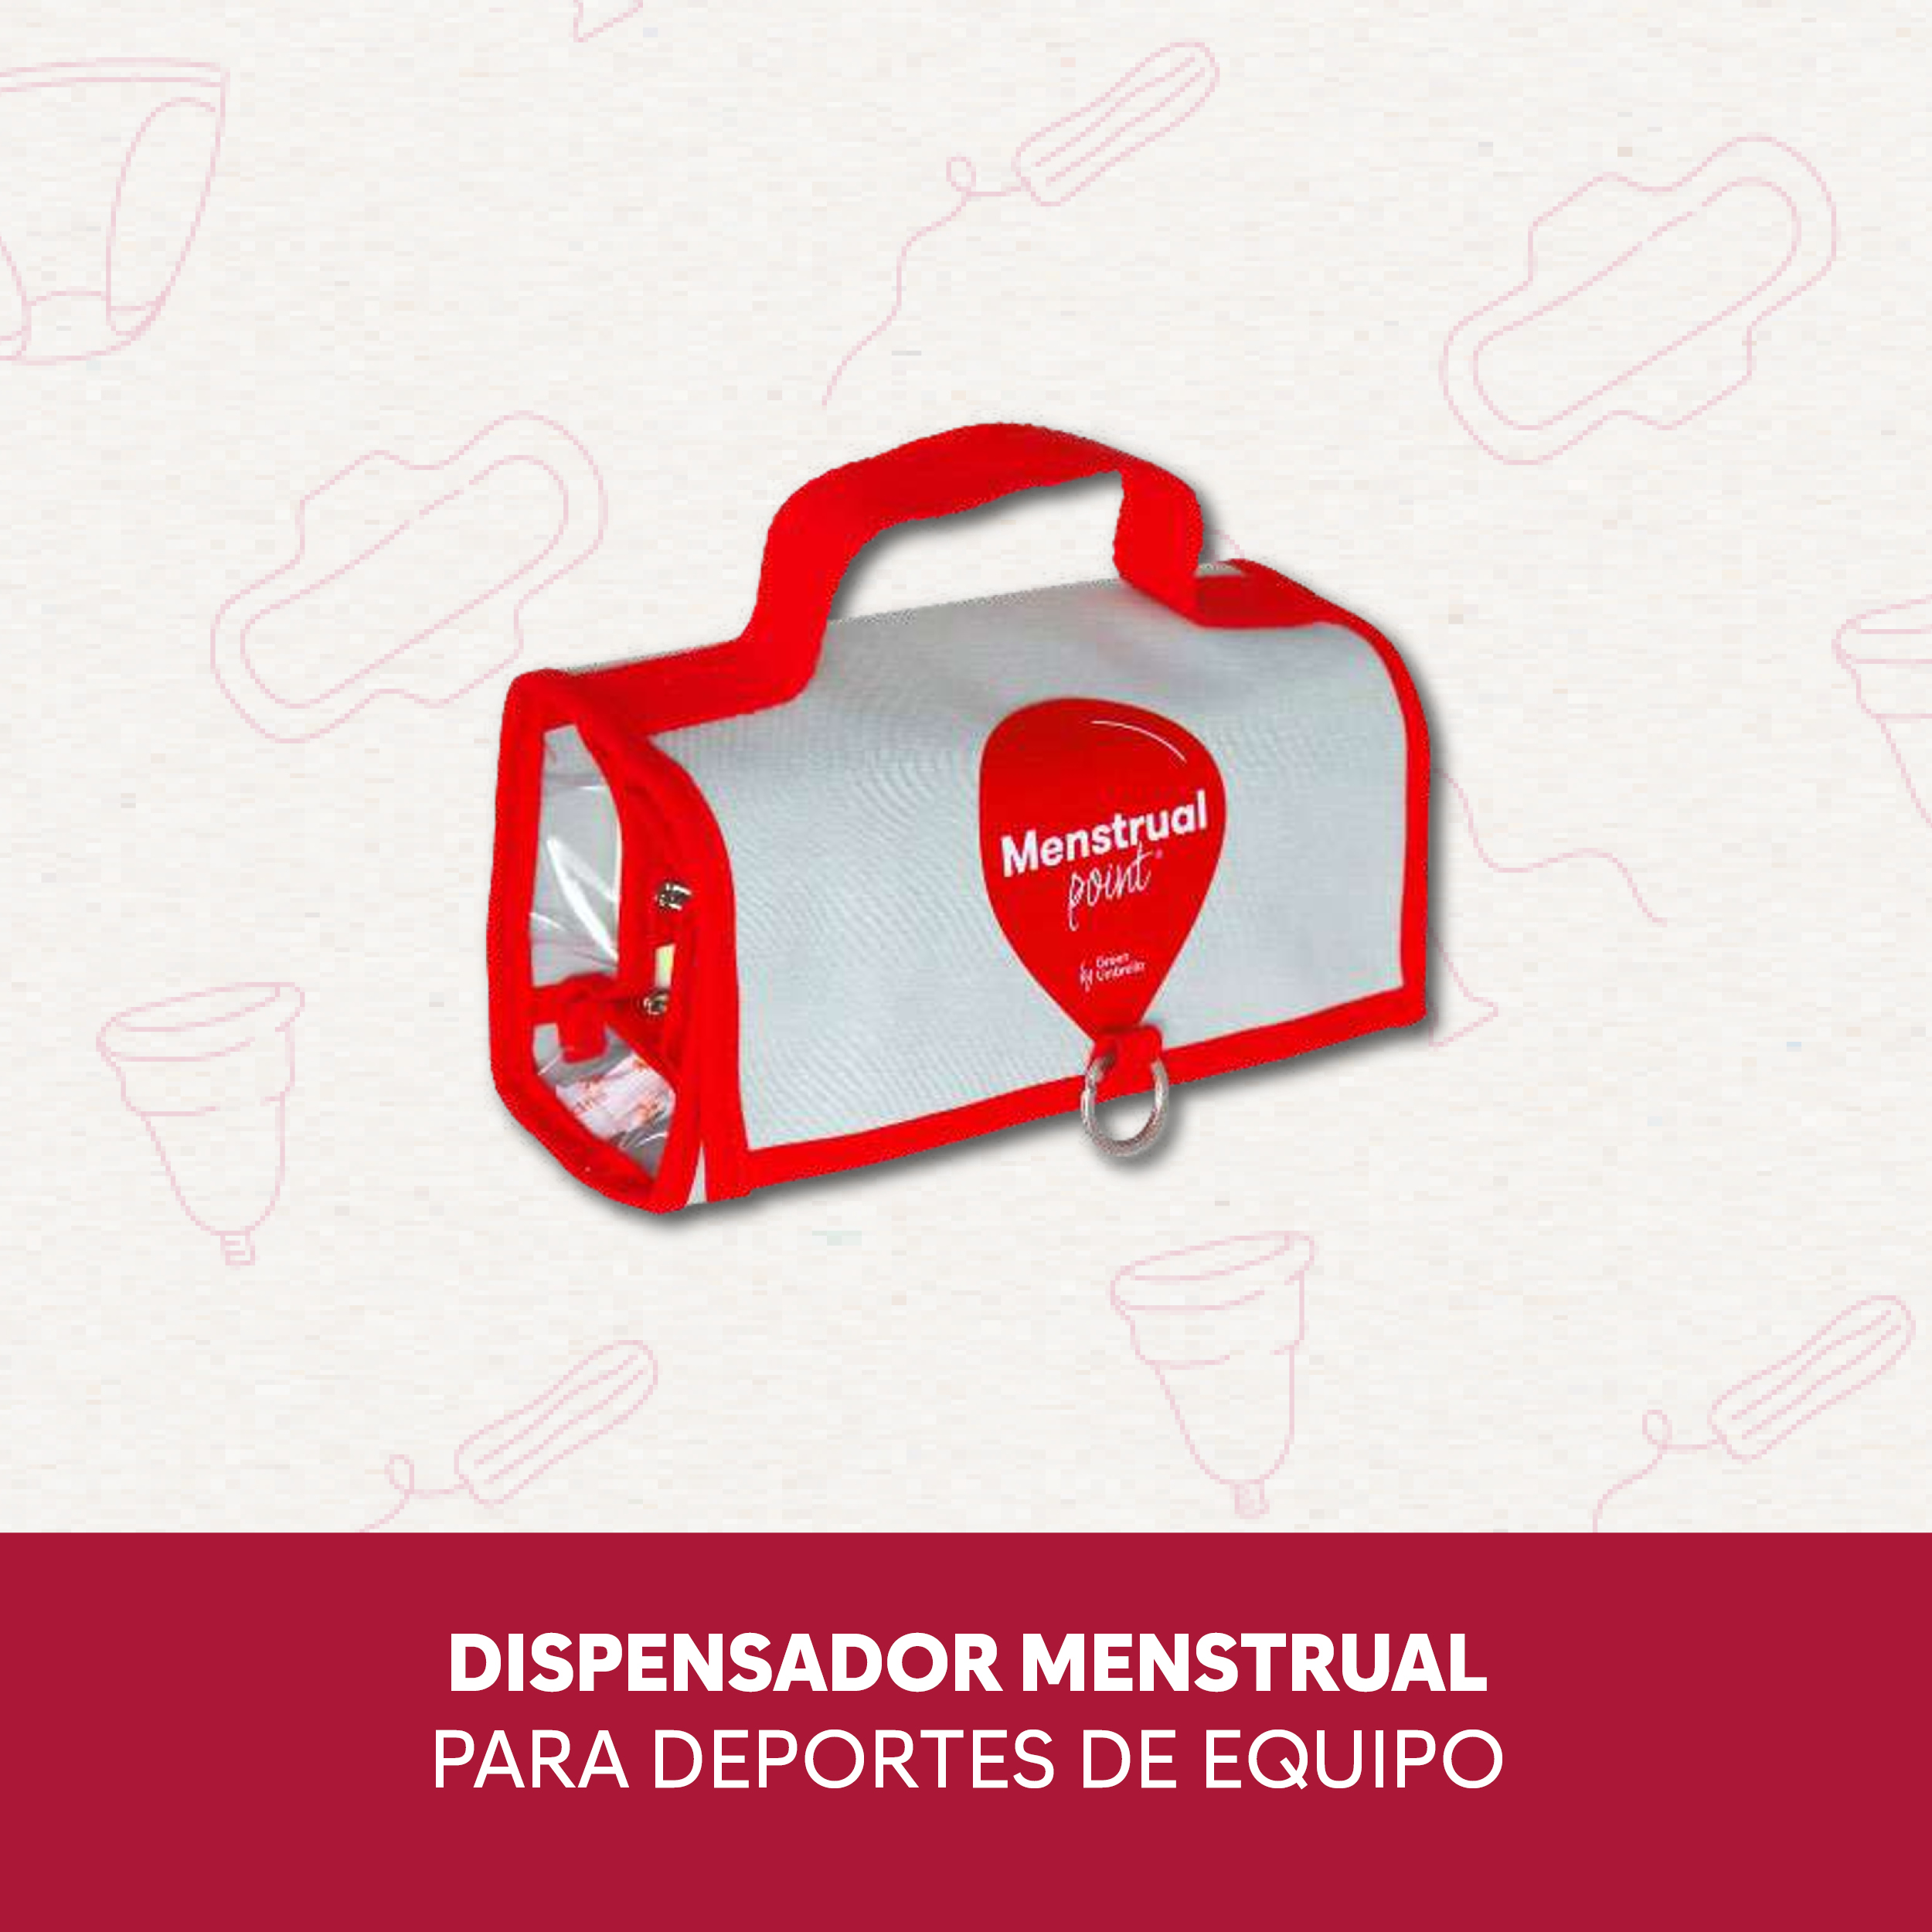 papelmatic-higiene-profesional-guia-para-comprar-productos-higiene-menstrual-point-dispensador-menstrual